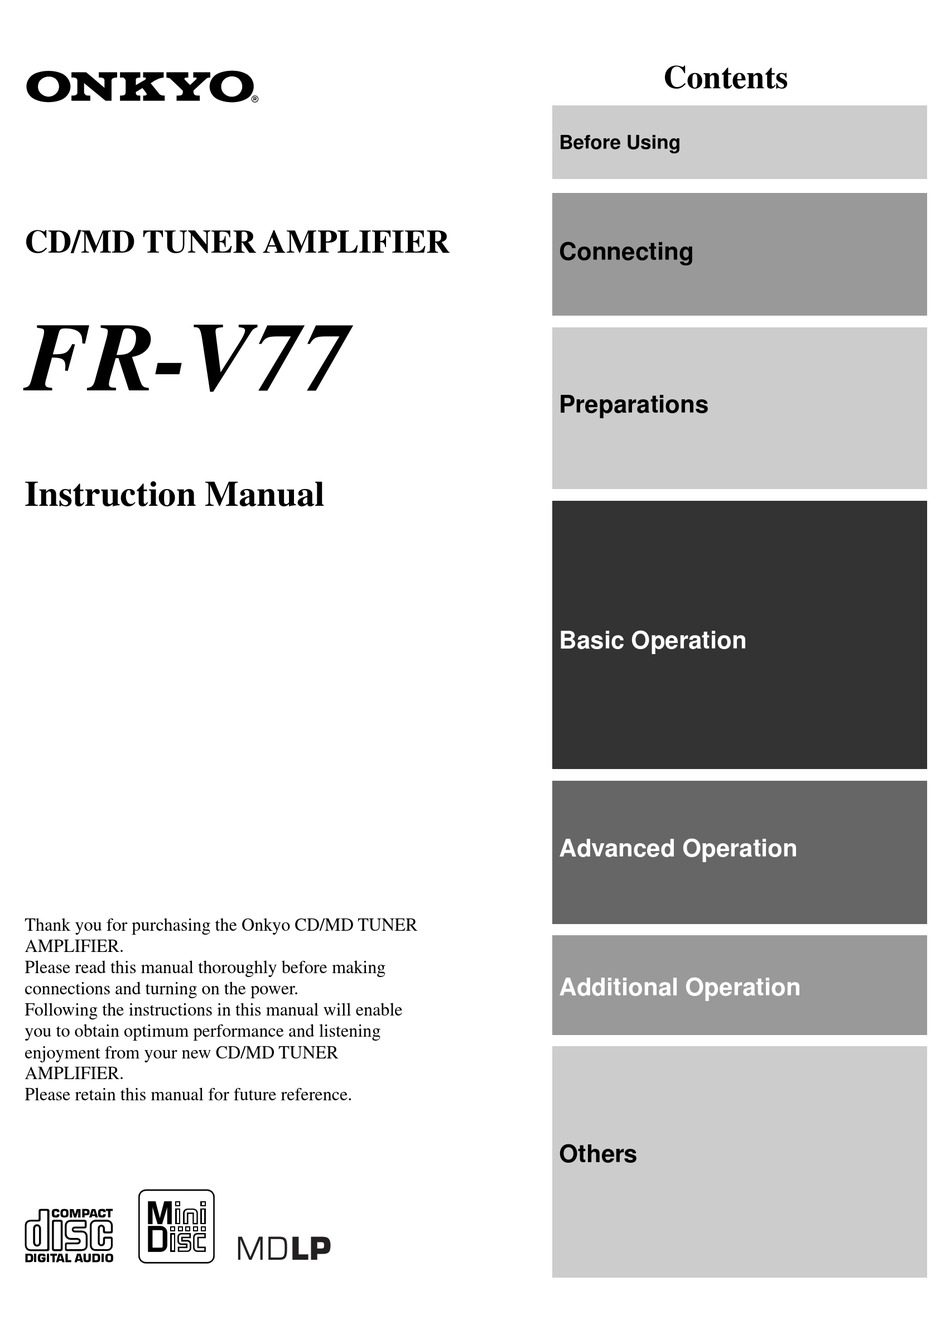 ONKYO FR-V77 INSTRUCTION MANUAL Pdf Download | ManualsLib